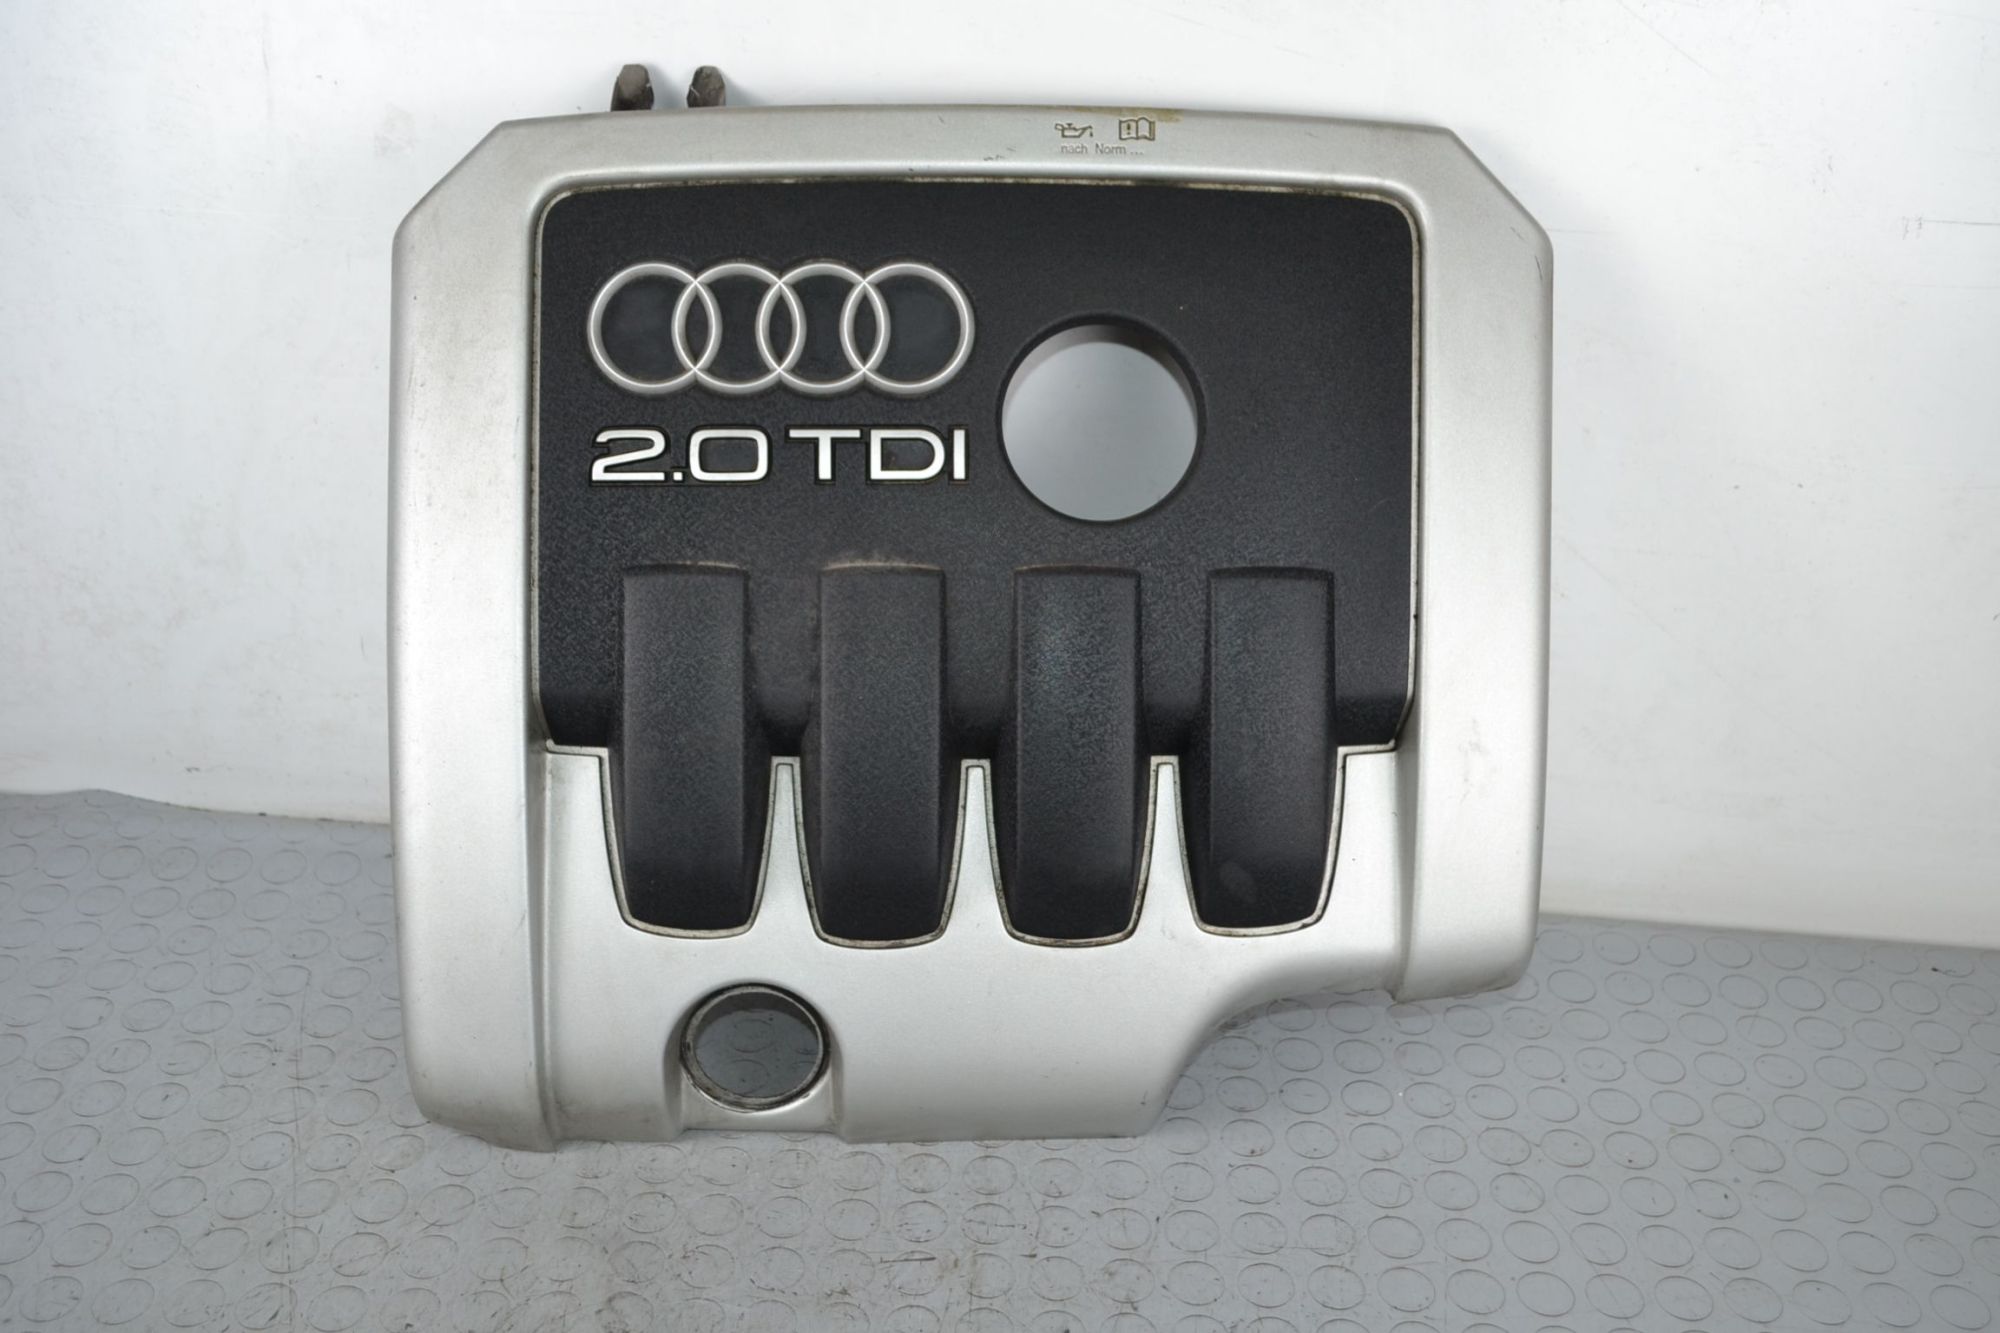 Coperchio Motore Audi A3 8P dal 2003 al 2012 Cod 03g103925af  1698671479998